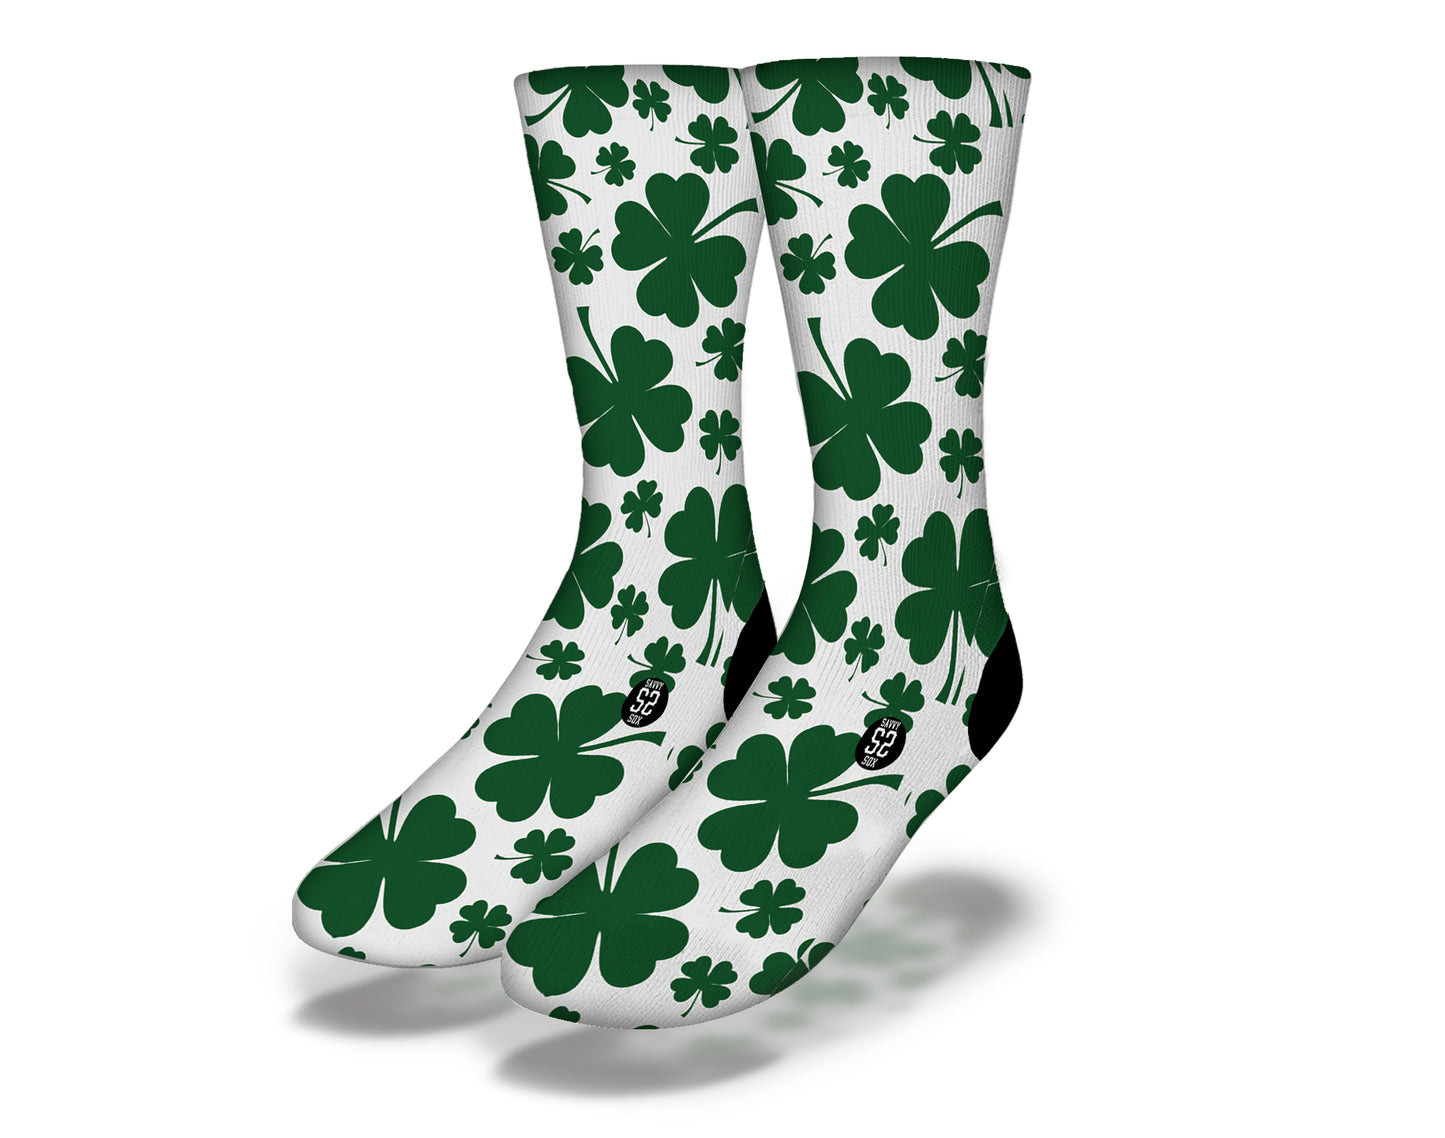 CLOVER ATTACK Funny St Patrick's Day Socks